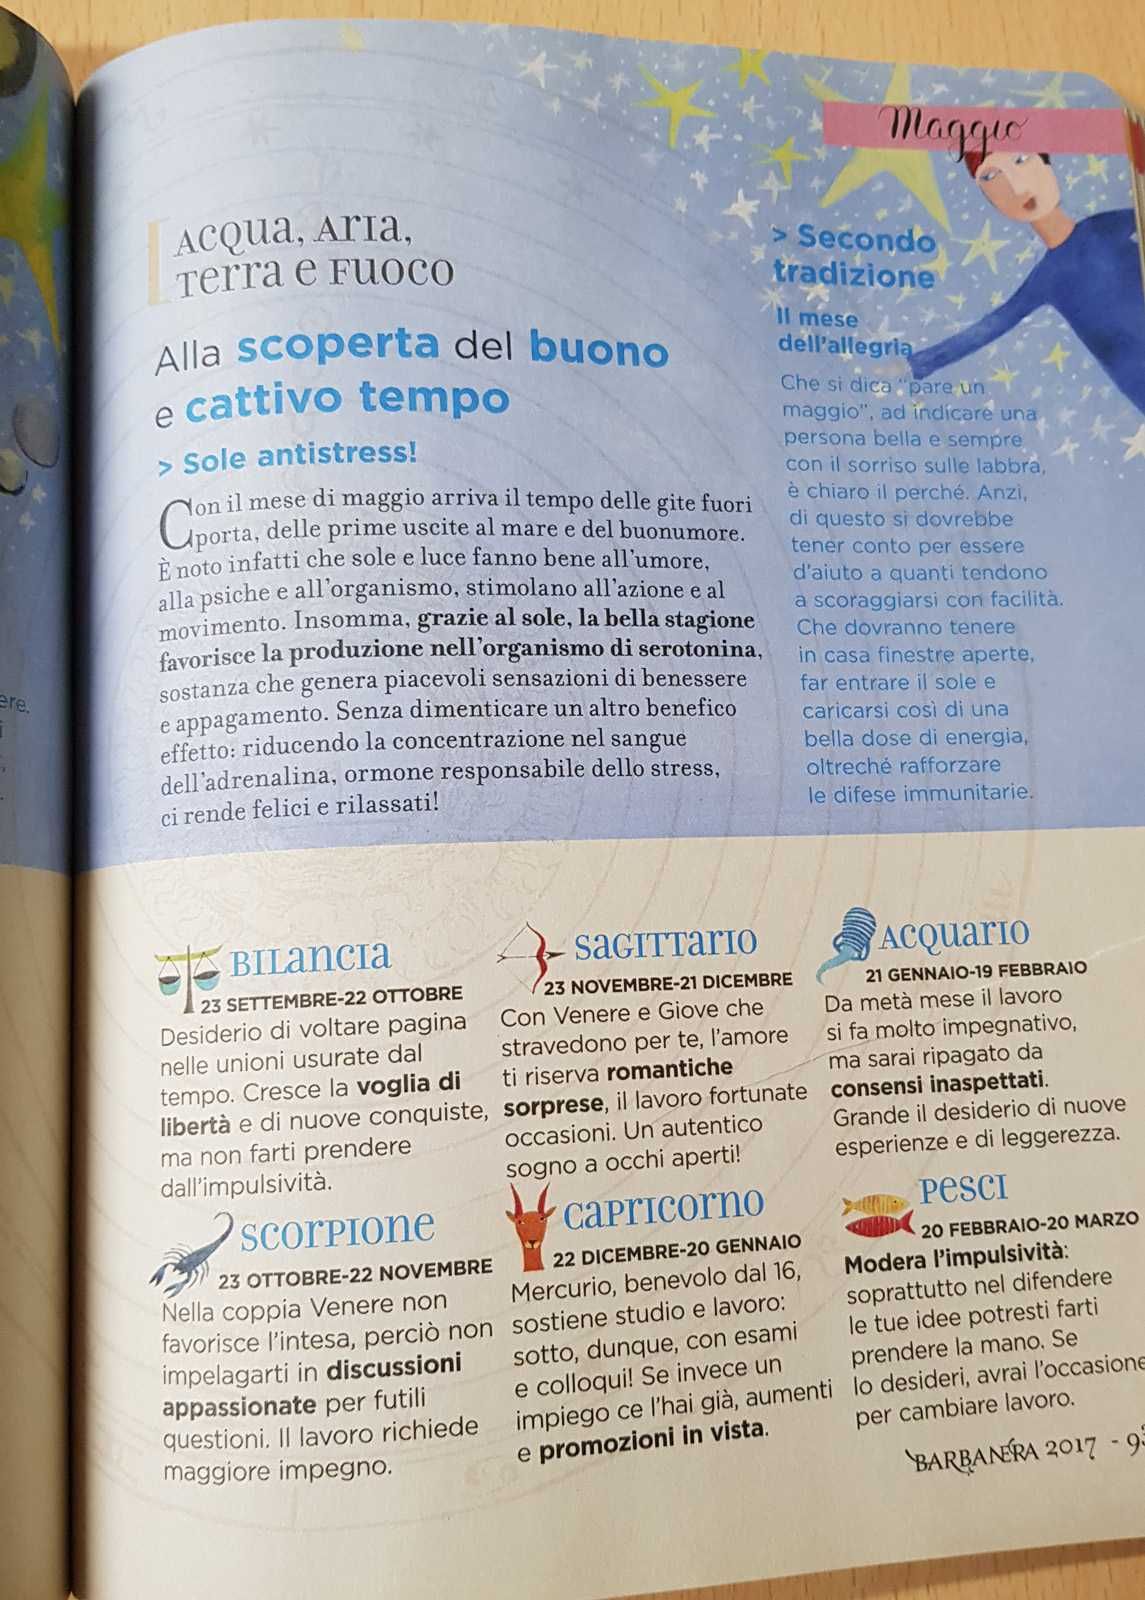 Almanacco Barbanera w jęz. włoskim rok 2016 i 2017 + Oroscopo gratis